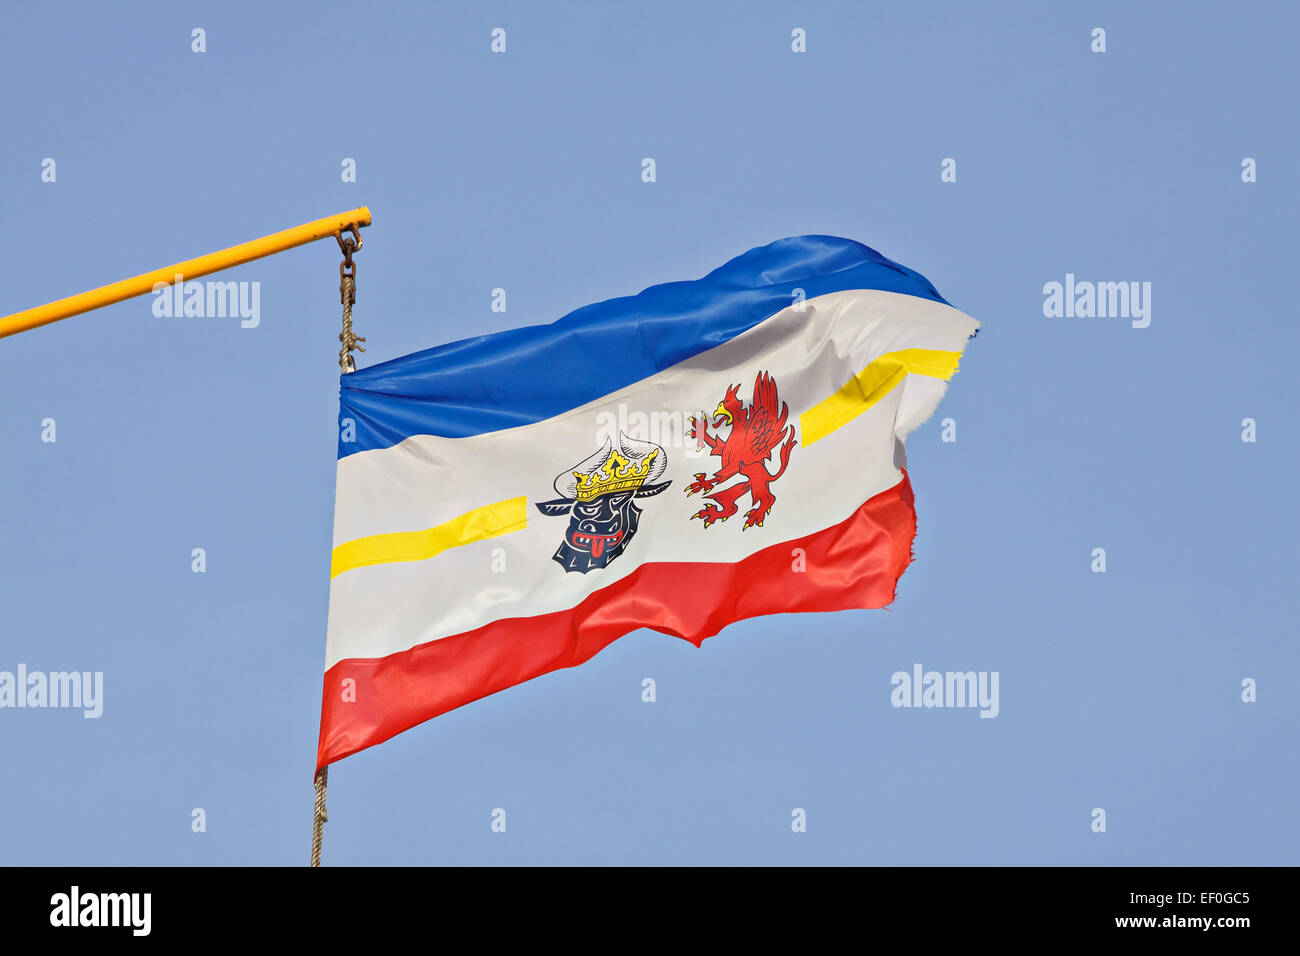 La bandera del Estado federado de Mecklemburgo-Pomerania Occidental. Foto de stock